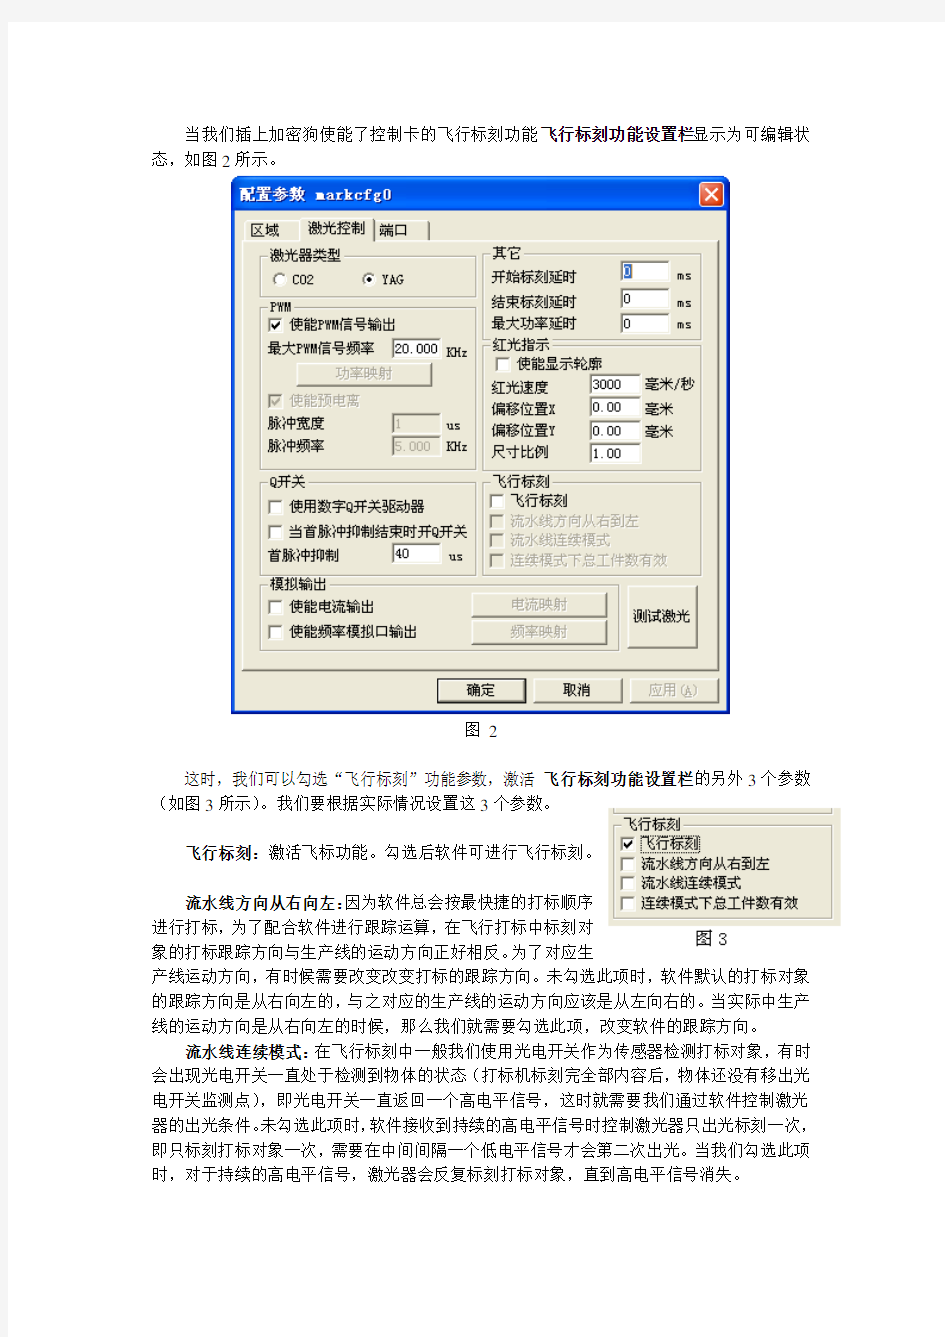 飞行打标中文使用说明书飞行标刻使用说明书pdf